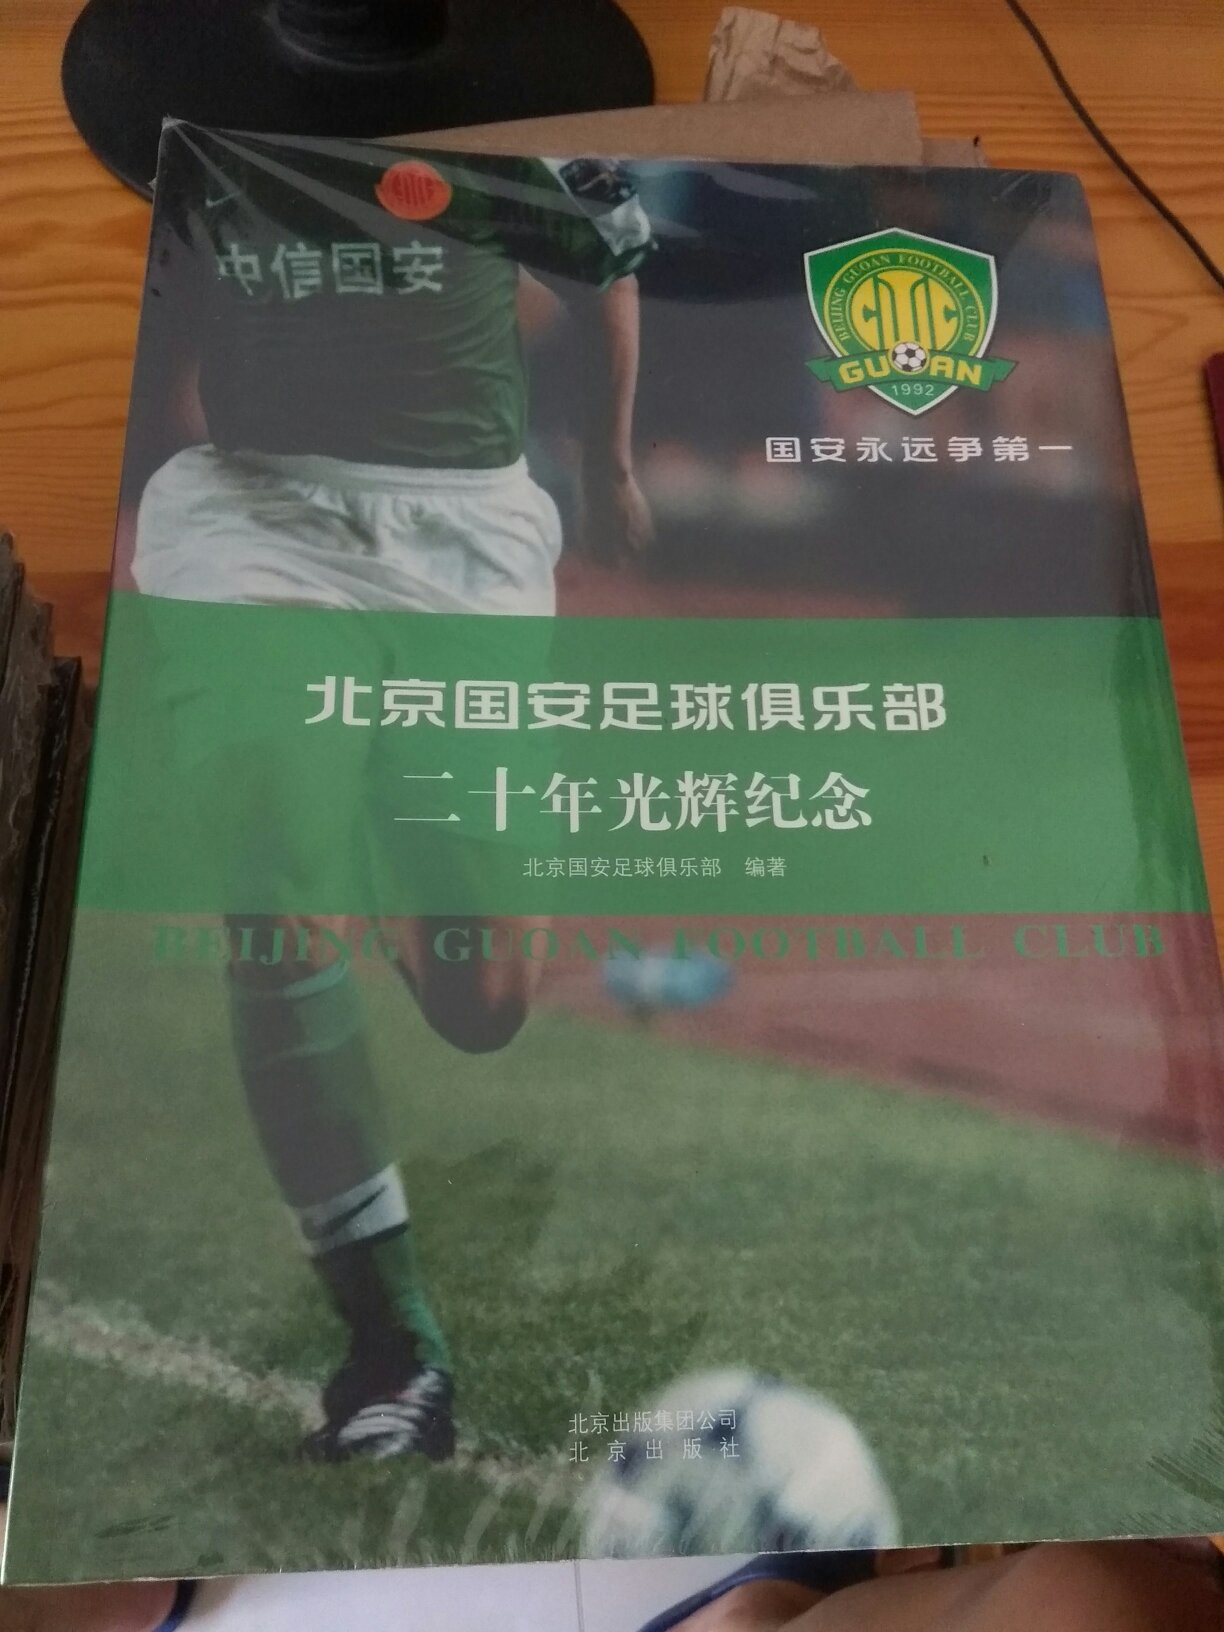 作为北京国安俱乐部的粉丝，怎能不拥有这样一本纪念册呢！！！